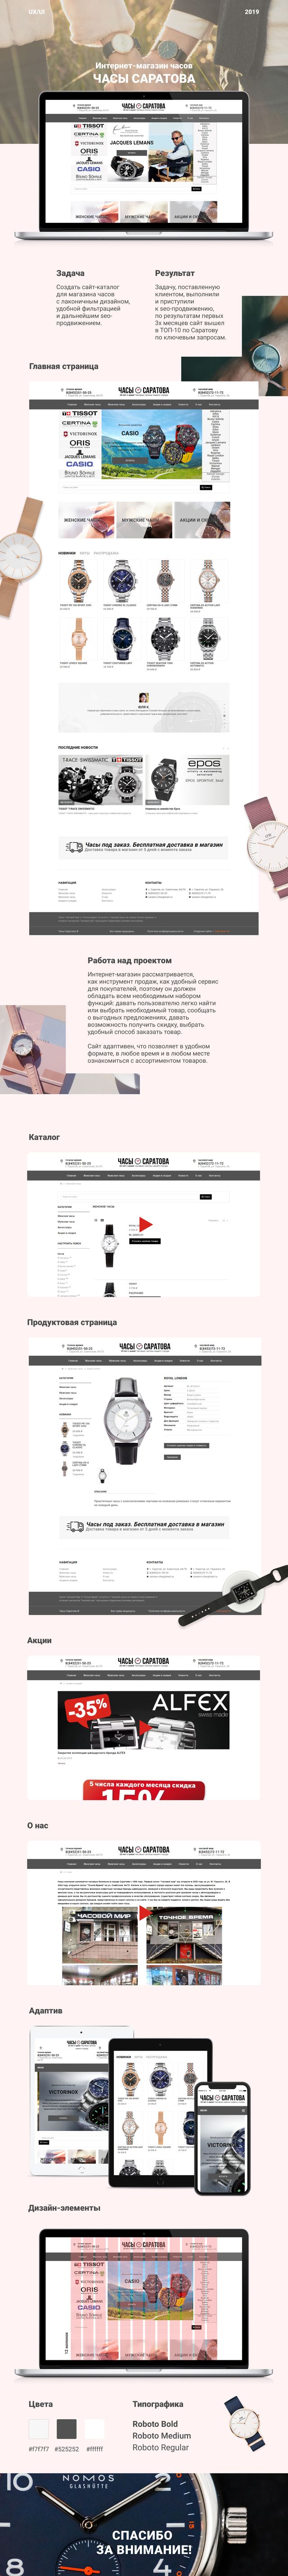 Разработка интернет-магазина для компании "Часы Саратова"